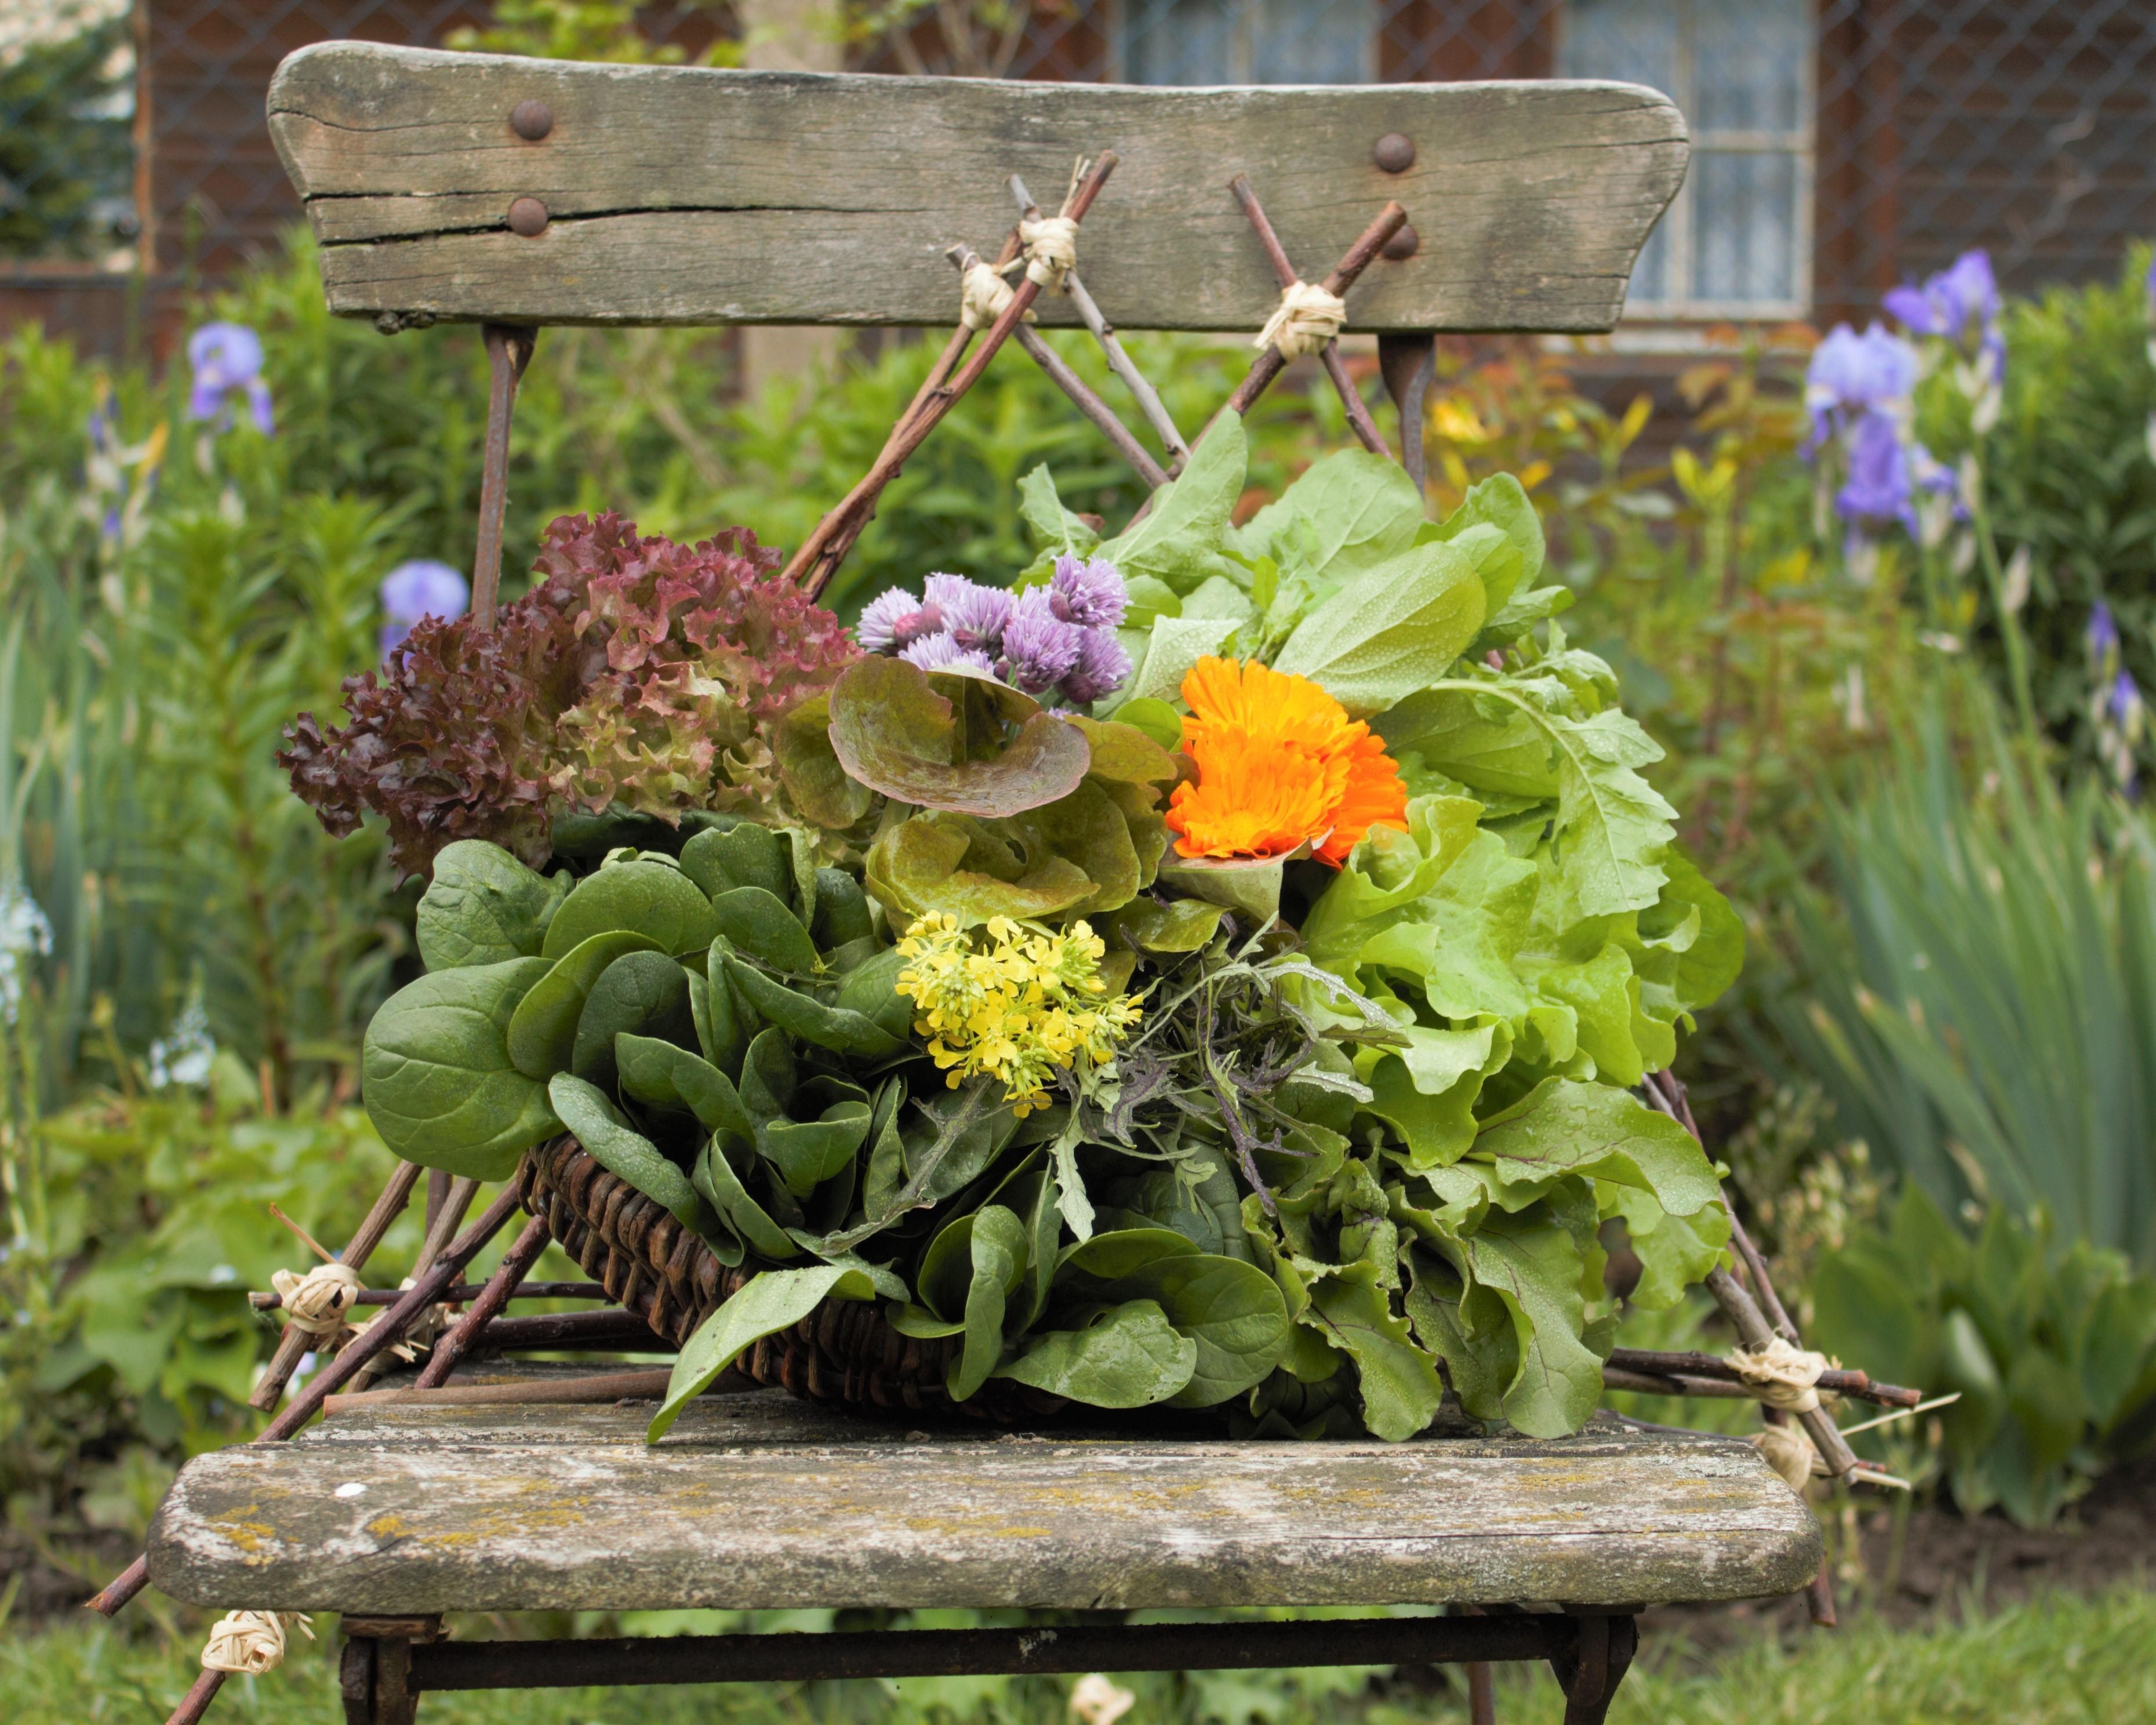 Ich bin im Moment viel im Garten, hier die Ergebnisse die  auch wunderbar schmecken!
#garten#garden#gartenliebe#salat